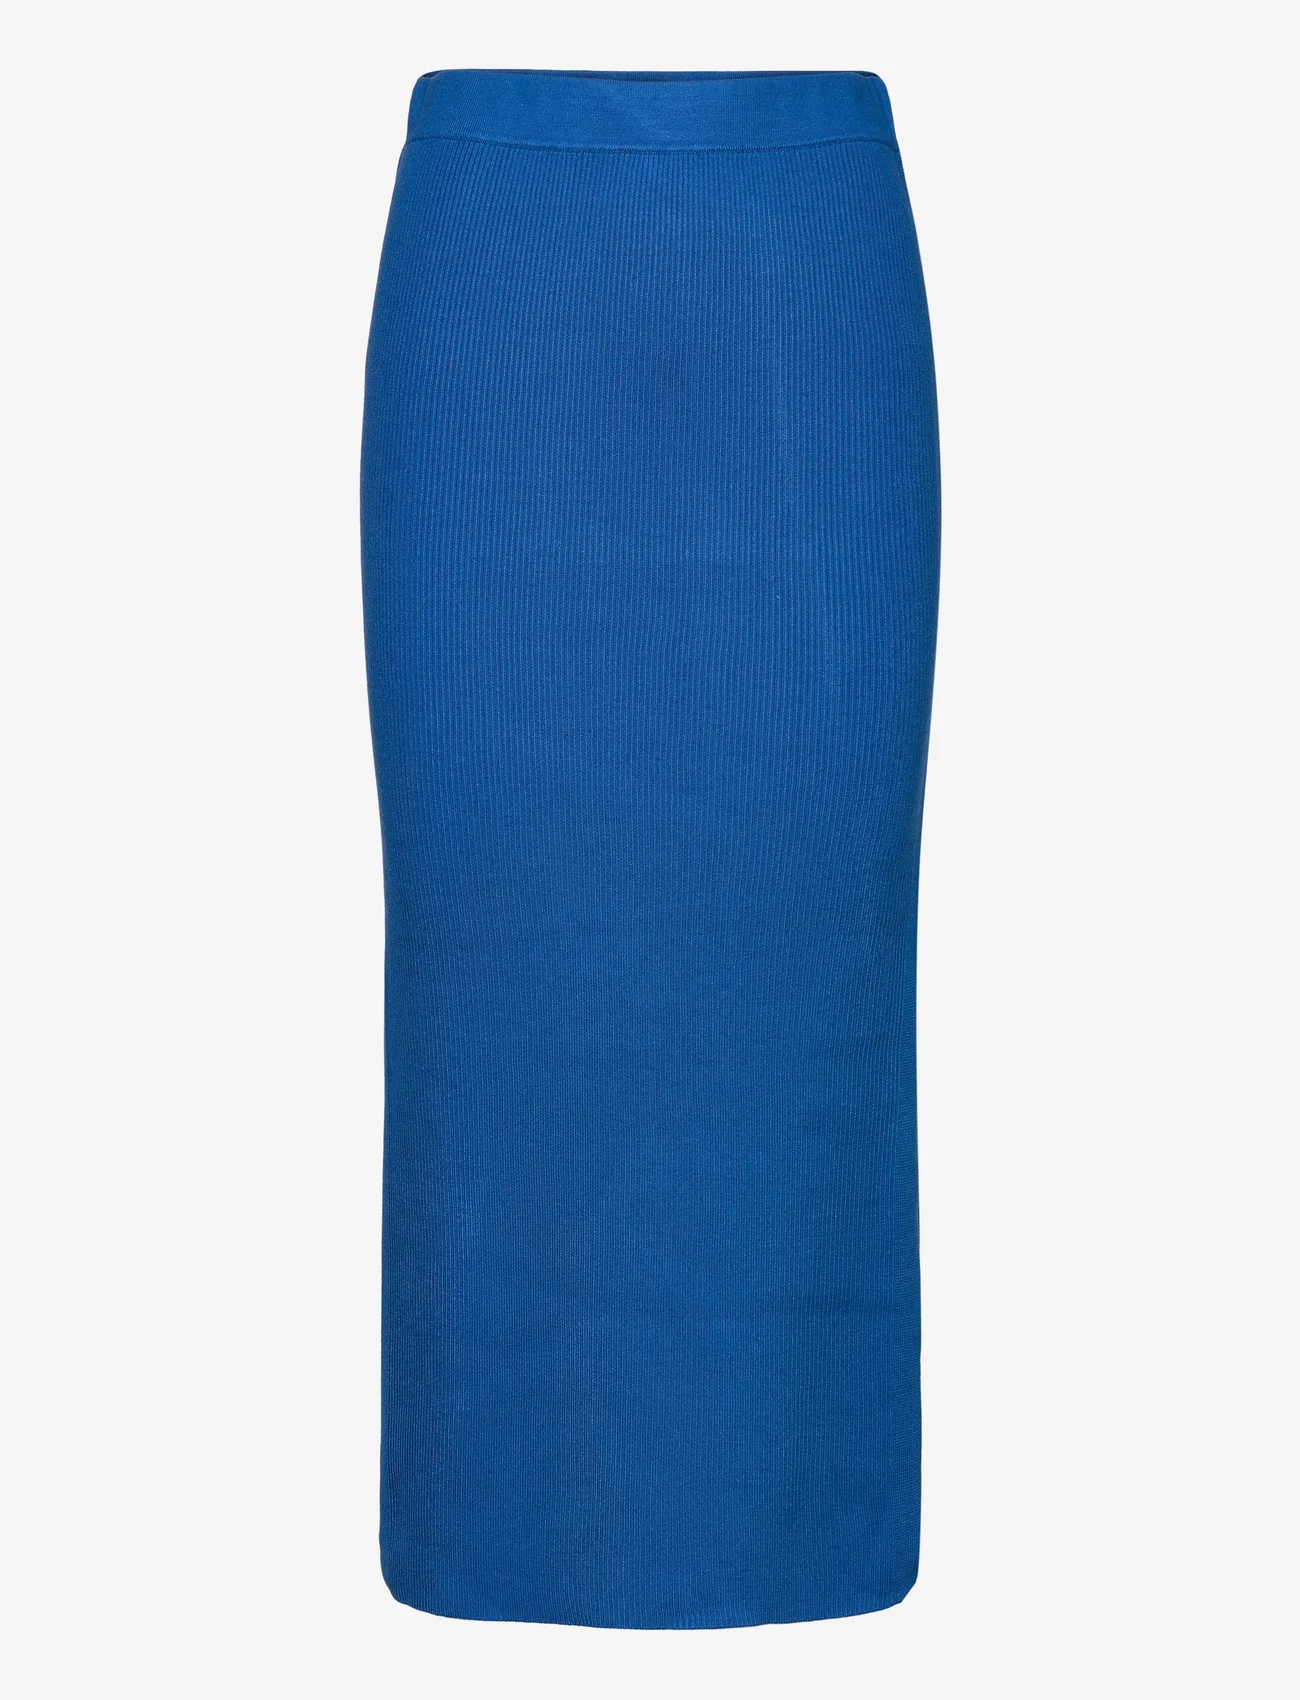 NORR - Sherry knit skirt - gebreide rokken - royal blue - 0